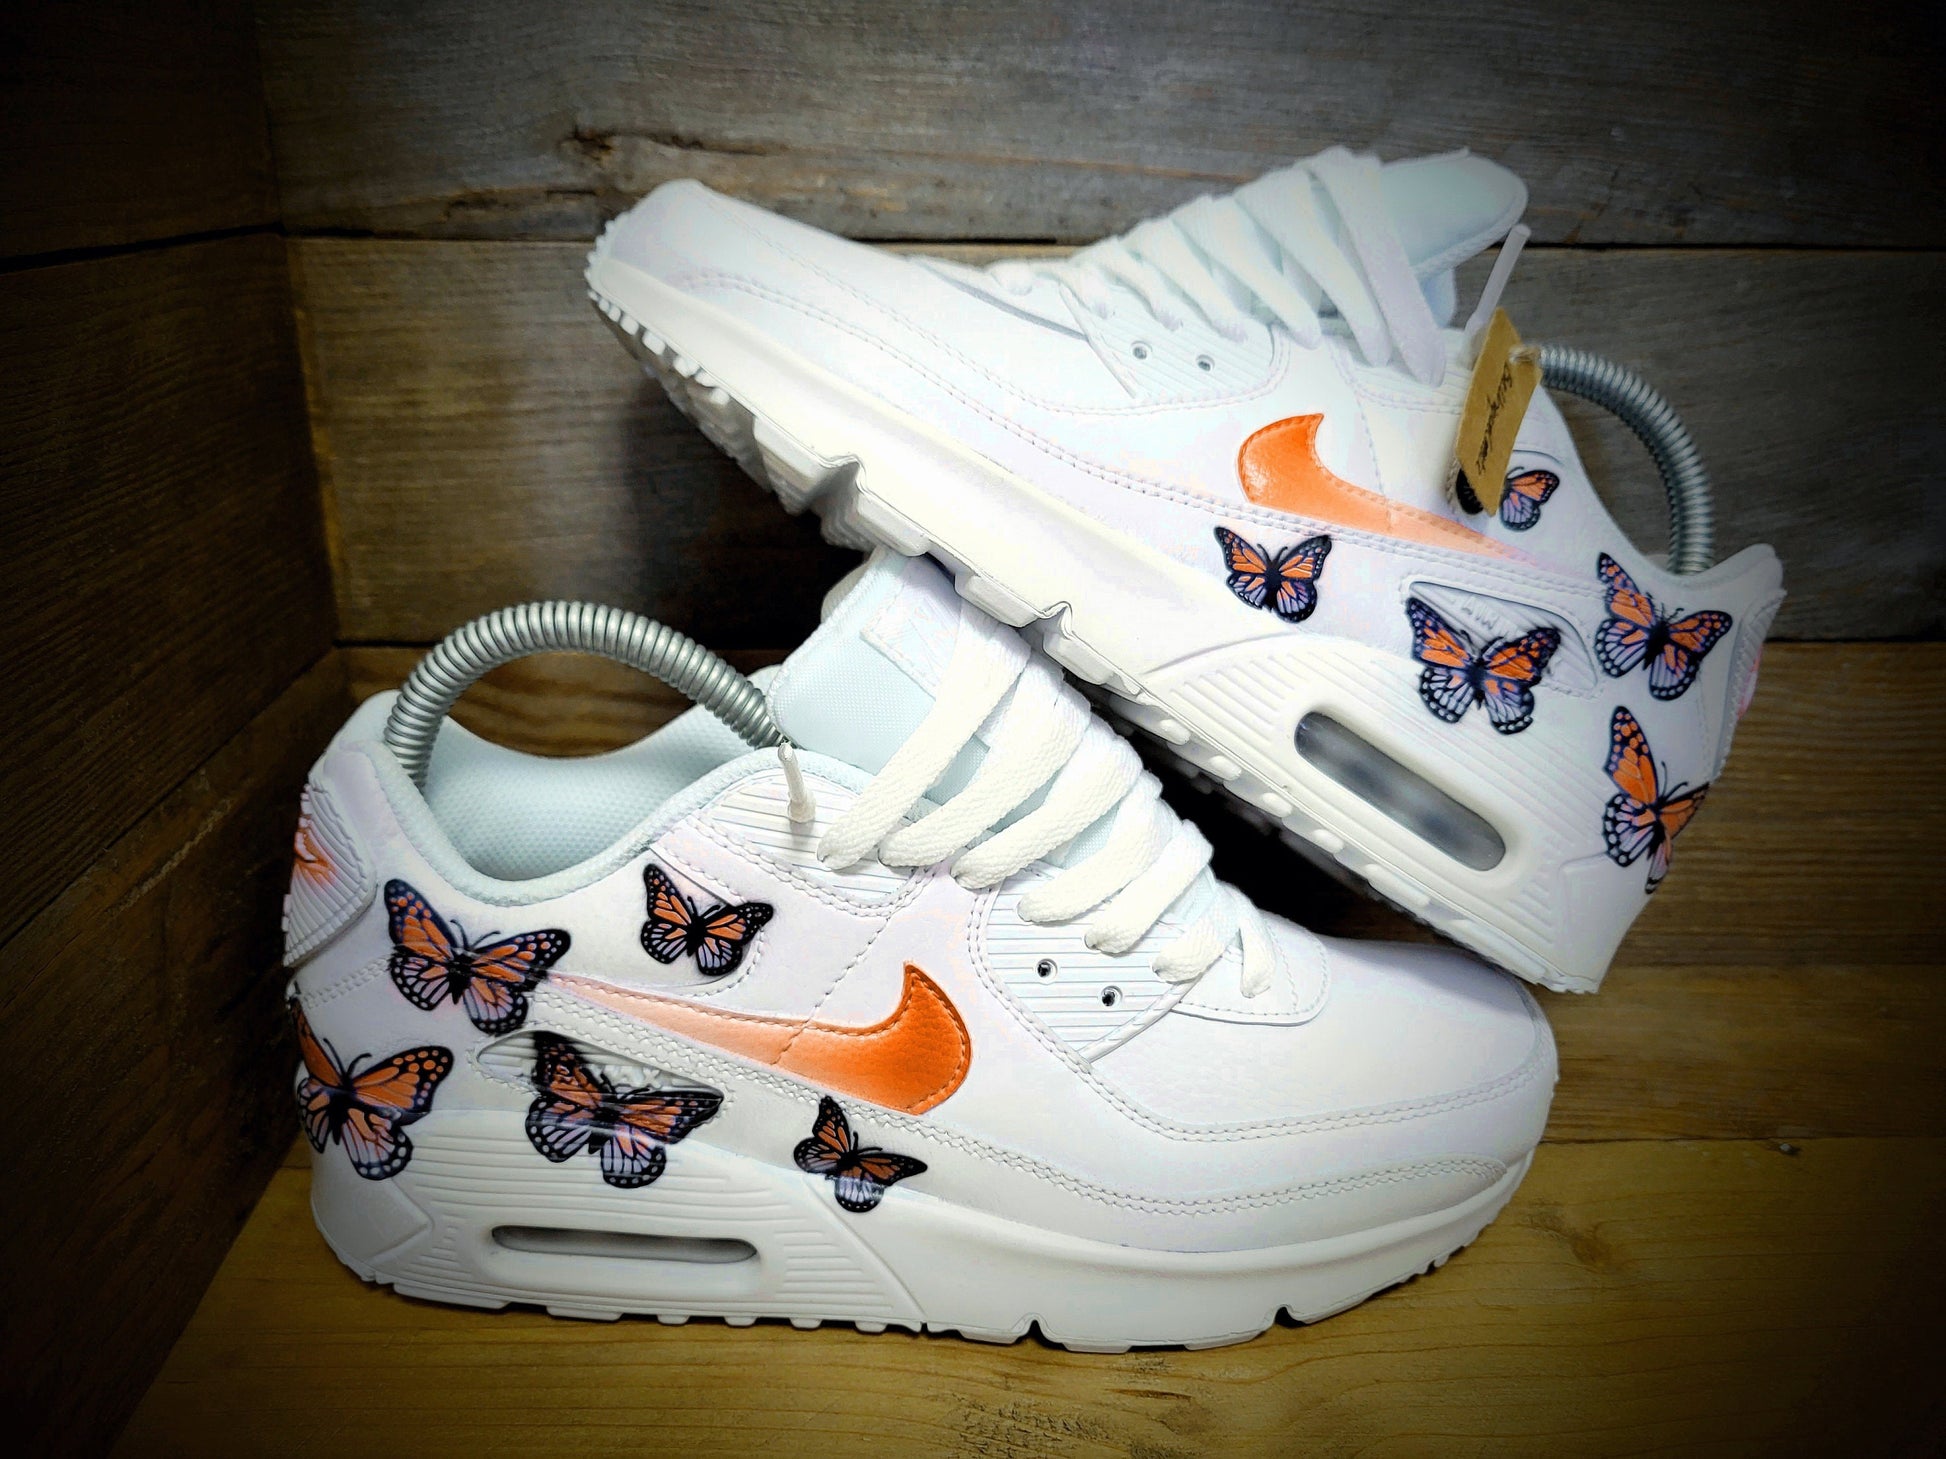 Custom Painted Air Max 90/Sneakers/Shoes/Kicks/Premium/Personalised/Orange Butterfly